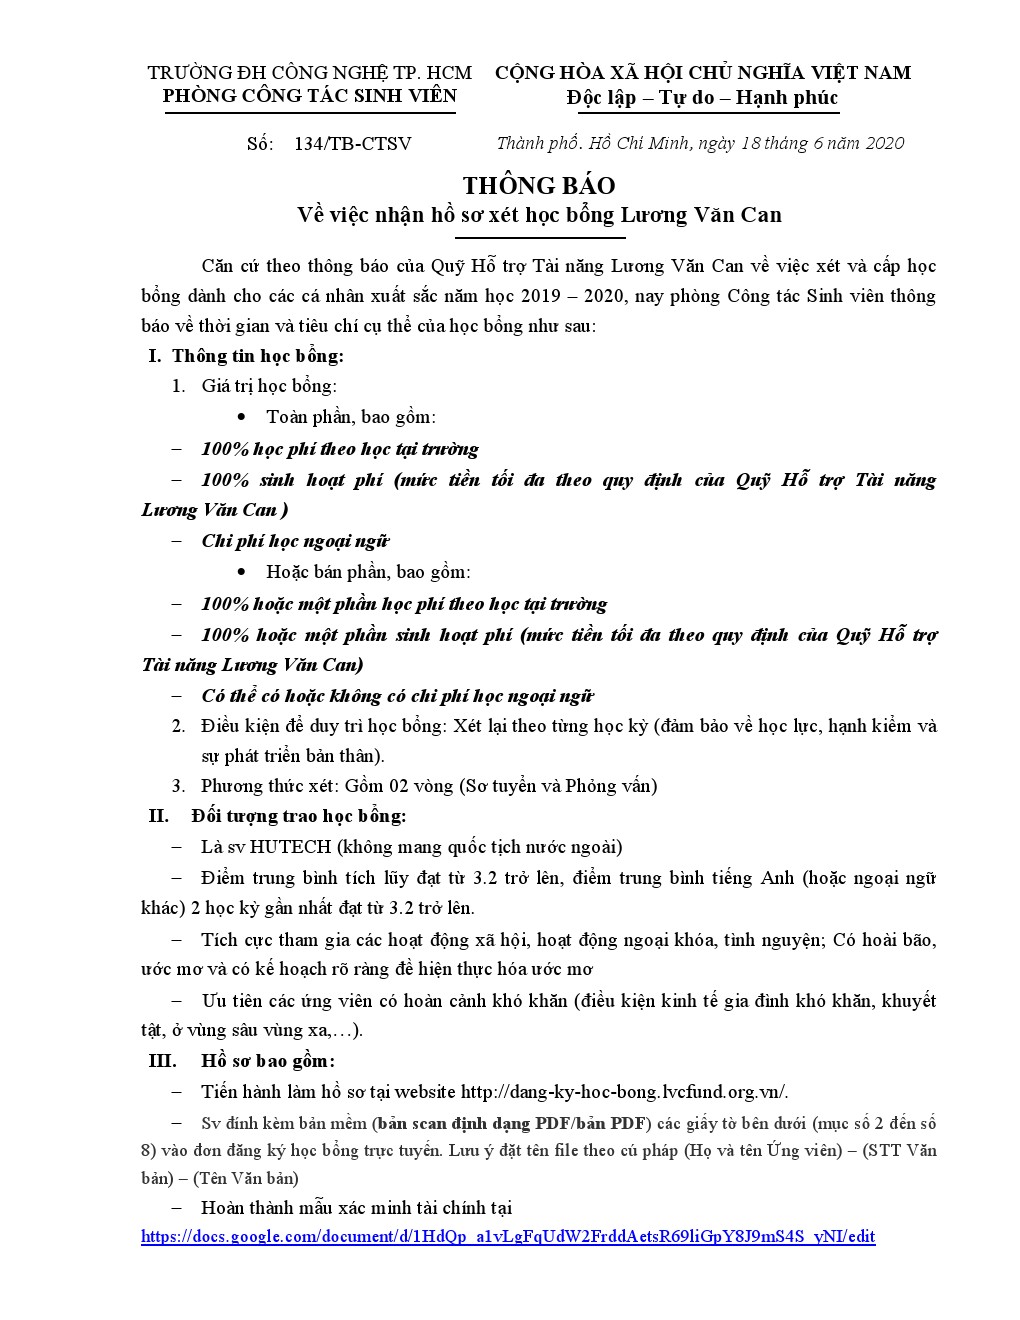 134/TB-CTSV tiếp nhận hồ sơ xét học bổng Lương Văn Can 2